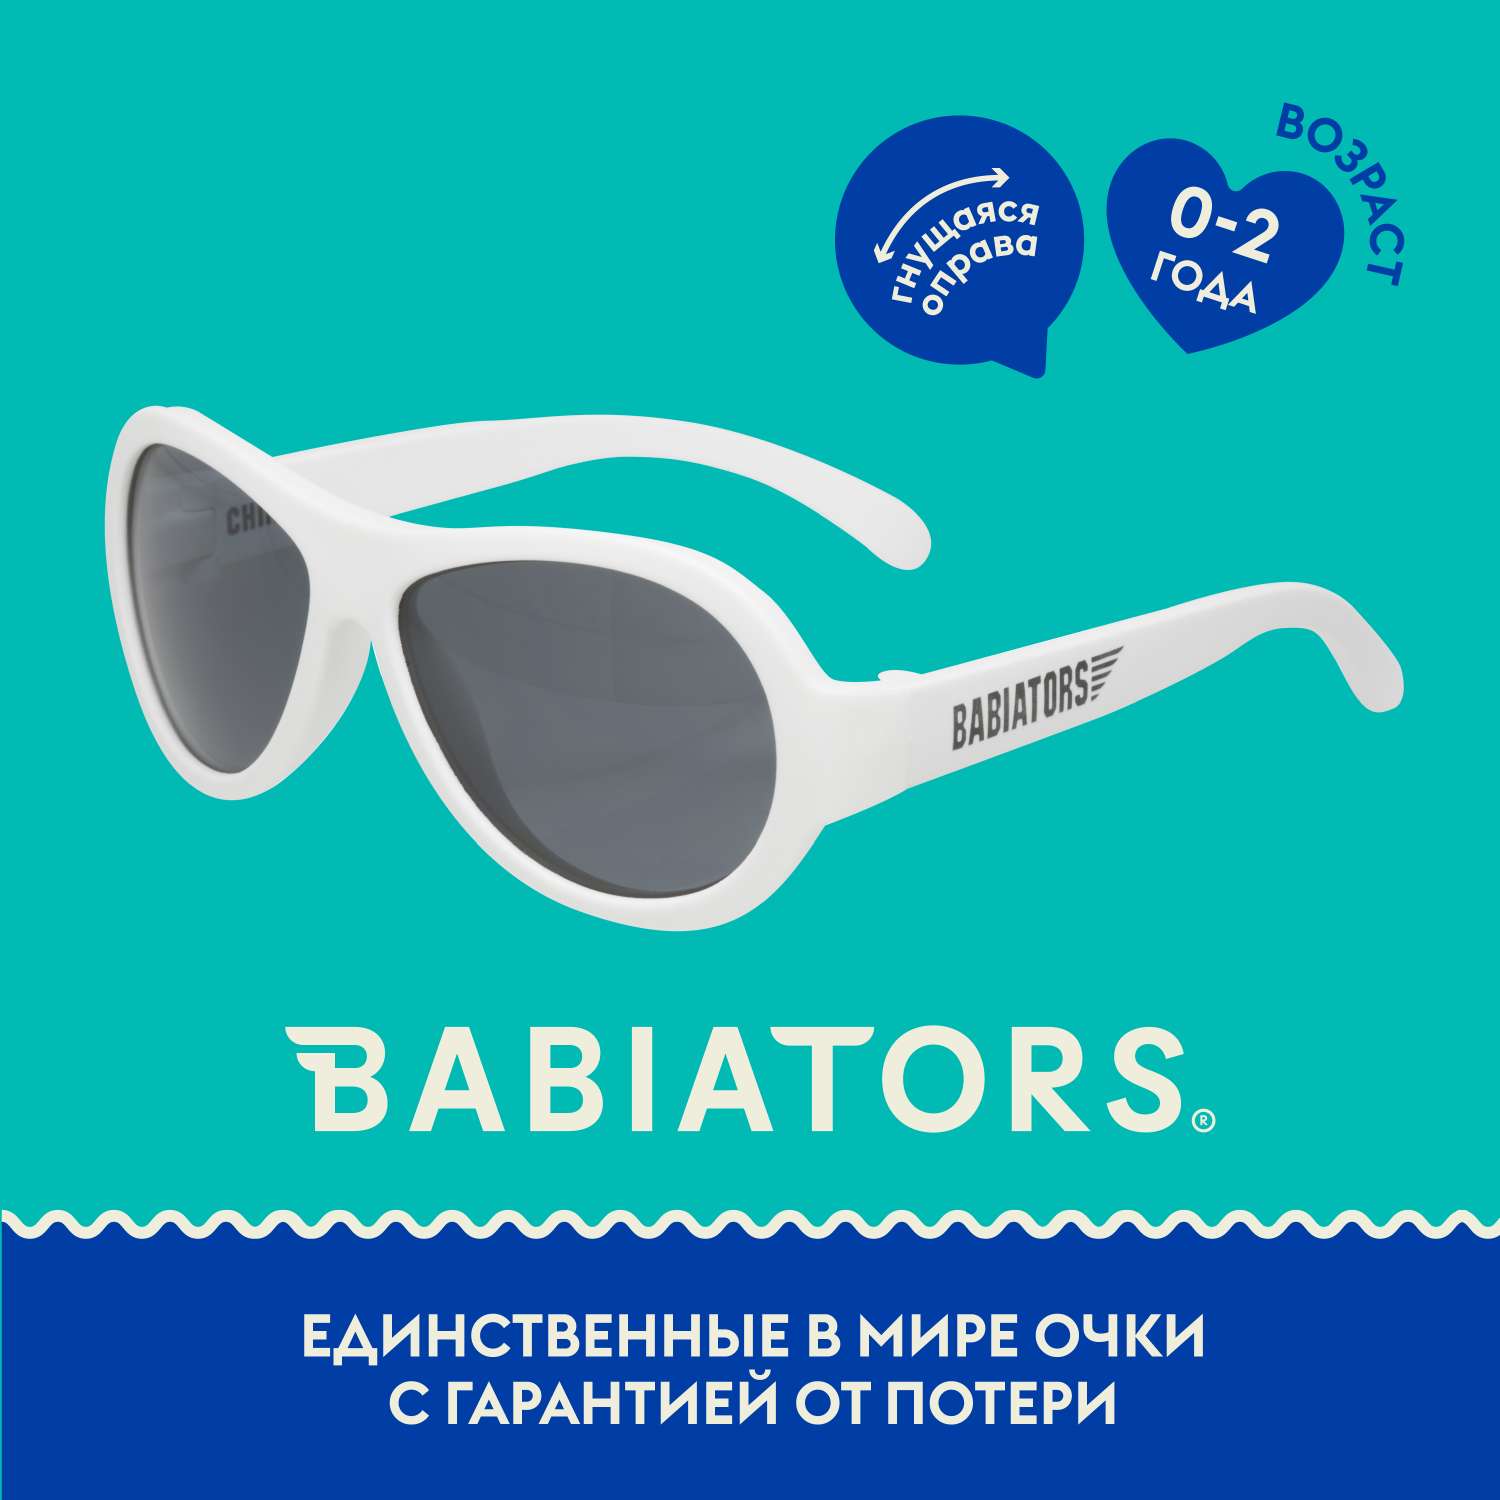 Солнцезащитные очки Babiators Aviator Шаловливый белый 0-2 BAB-009 - фото 1